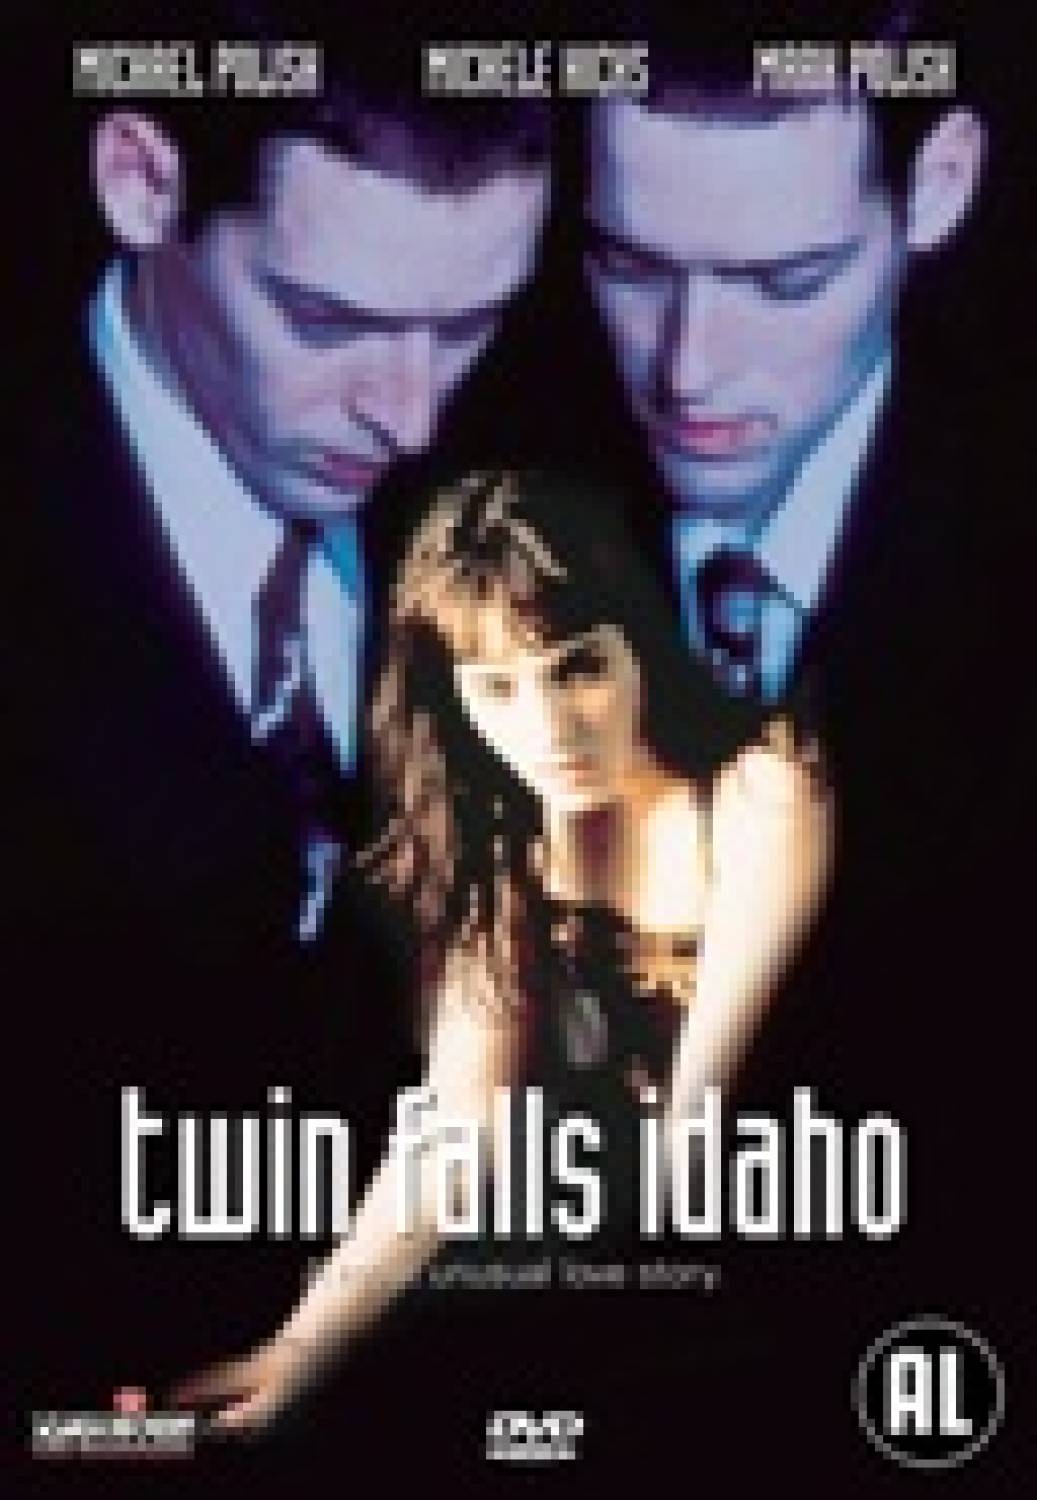 Twin Falls Idaho - The Movie Store